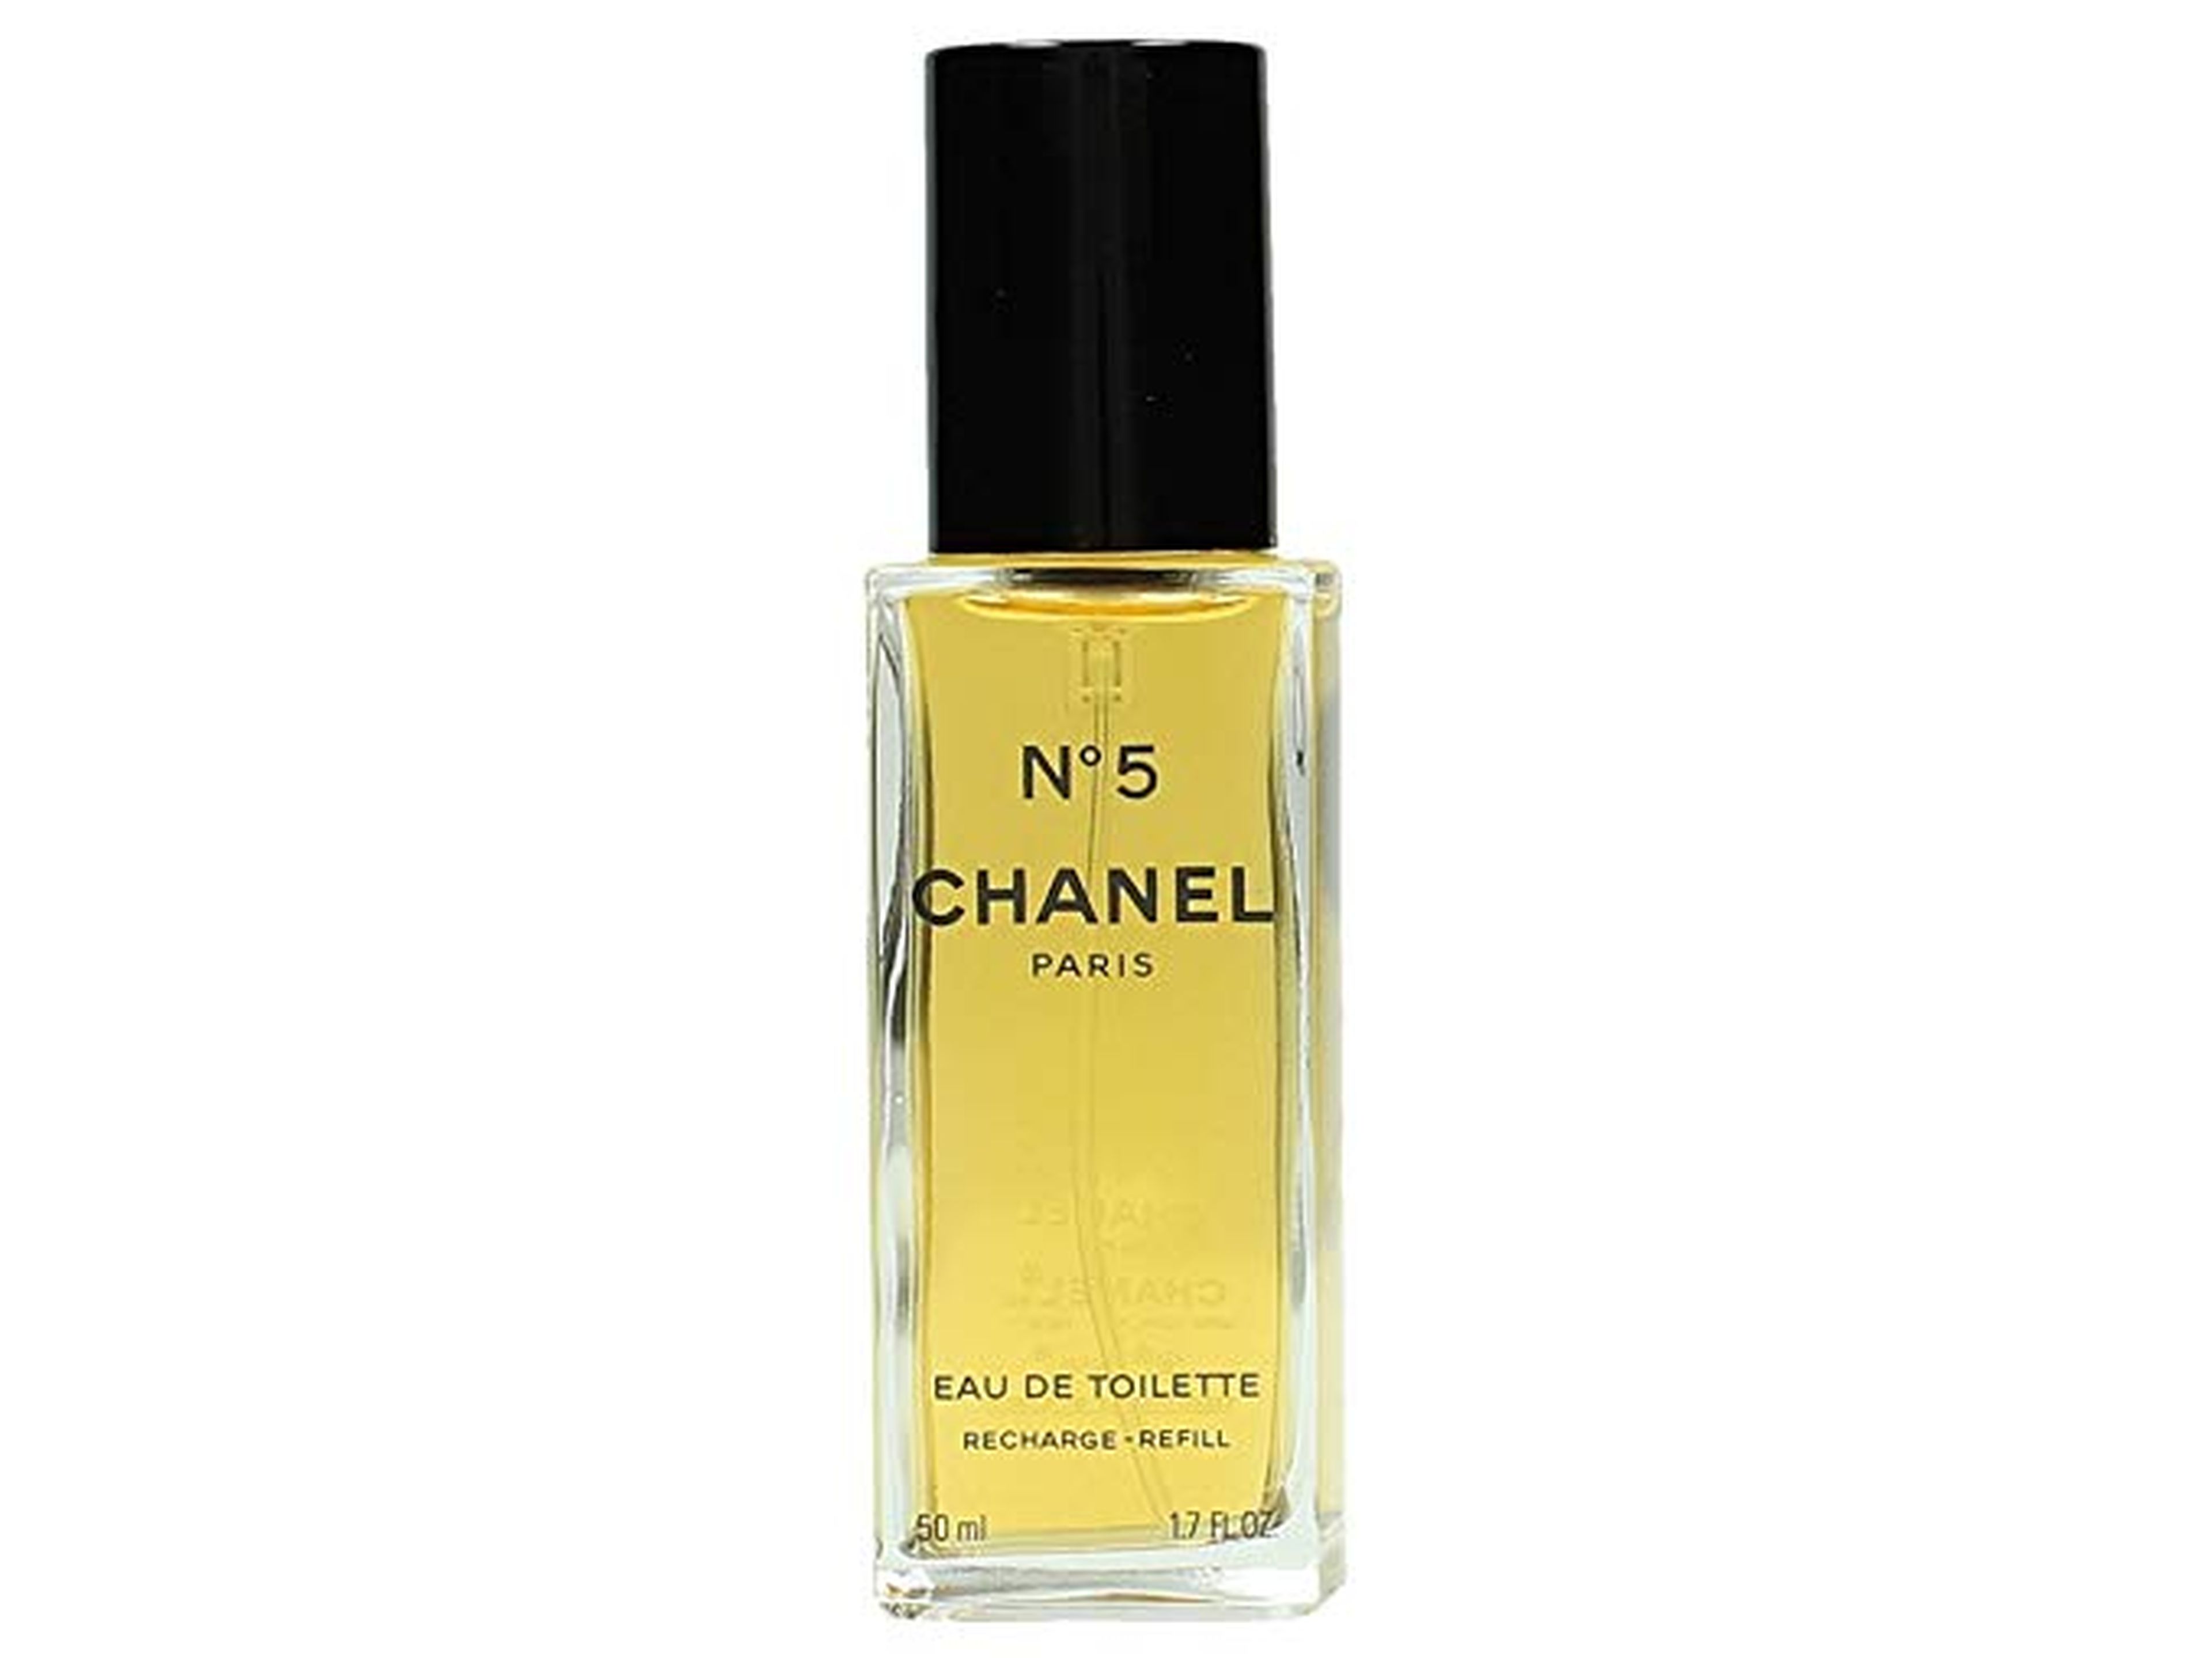 Un frasco de 50 ml. de Chanel Nº 5